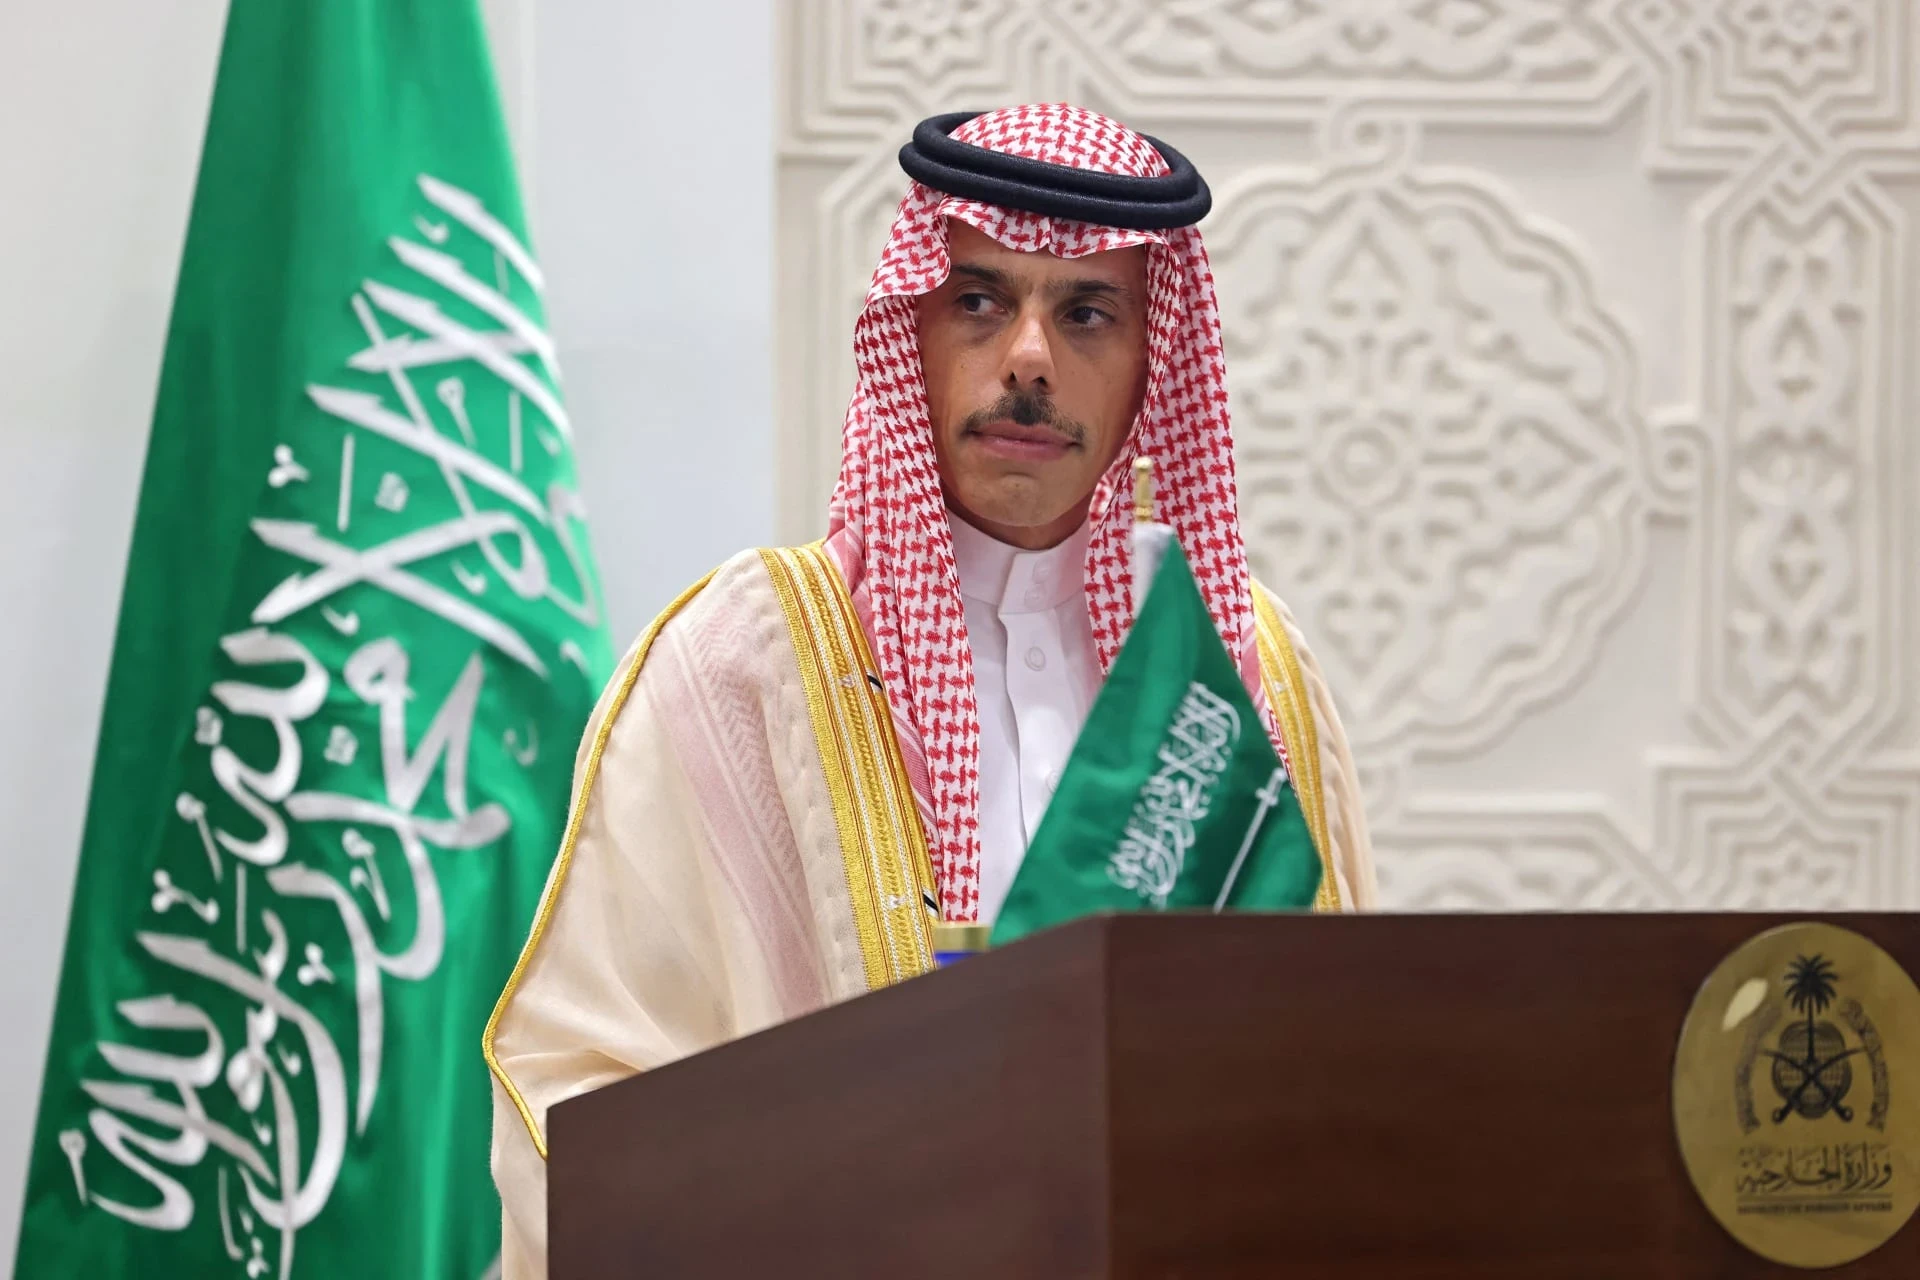 فيديو لوزير الخارجية السعودي يثير تفاعلا في مواقع التواصل